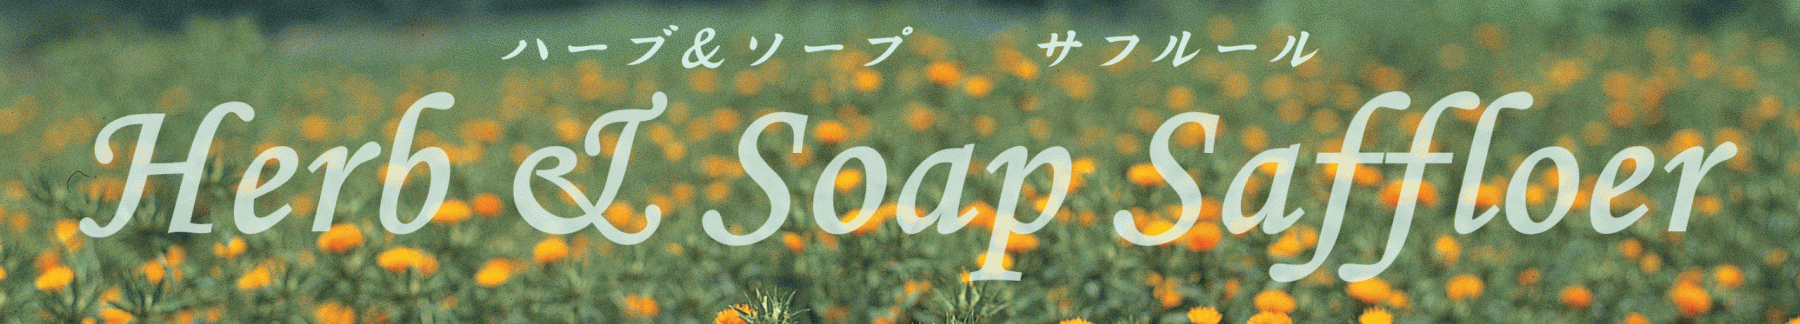 Herb ＆ Soap Saffloer